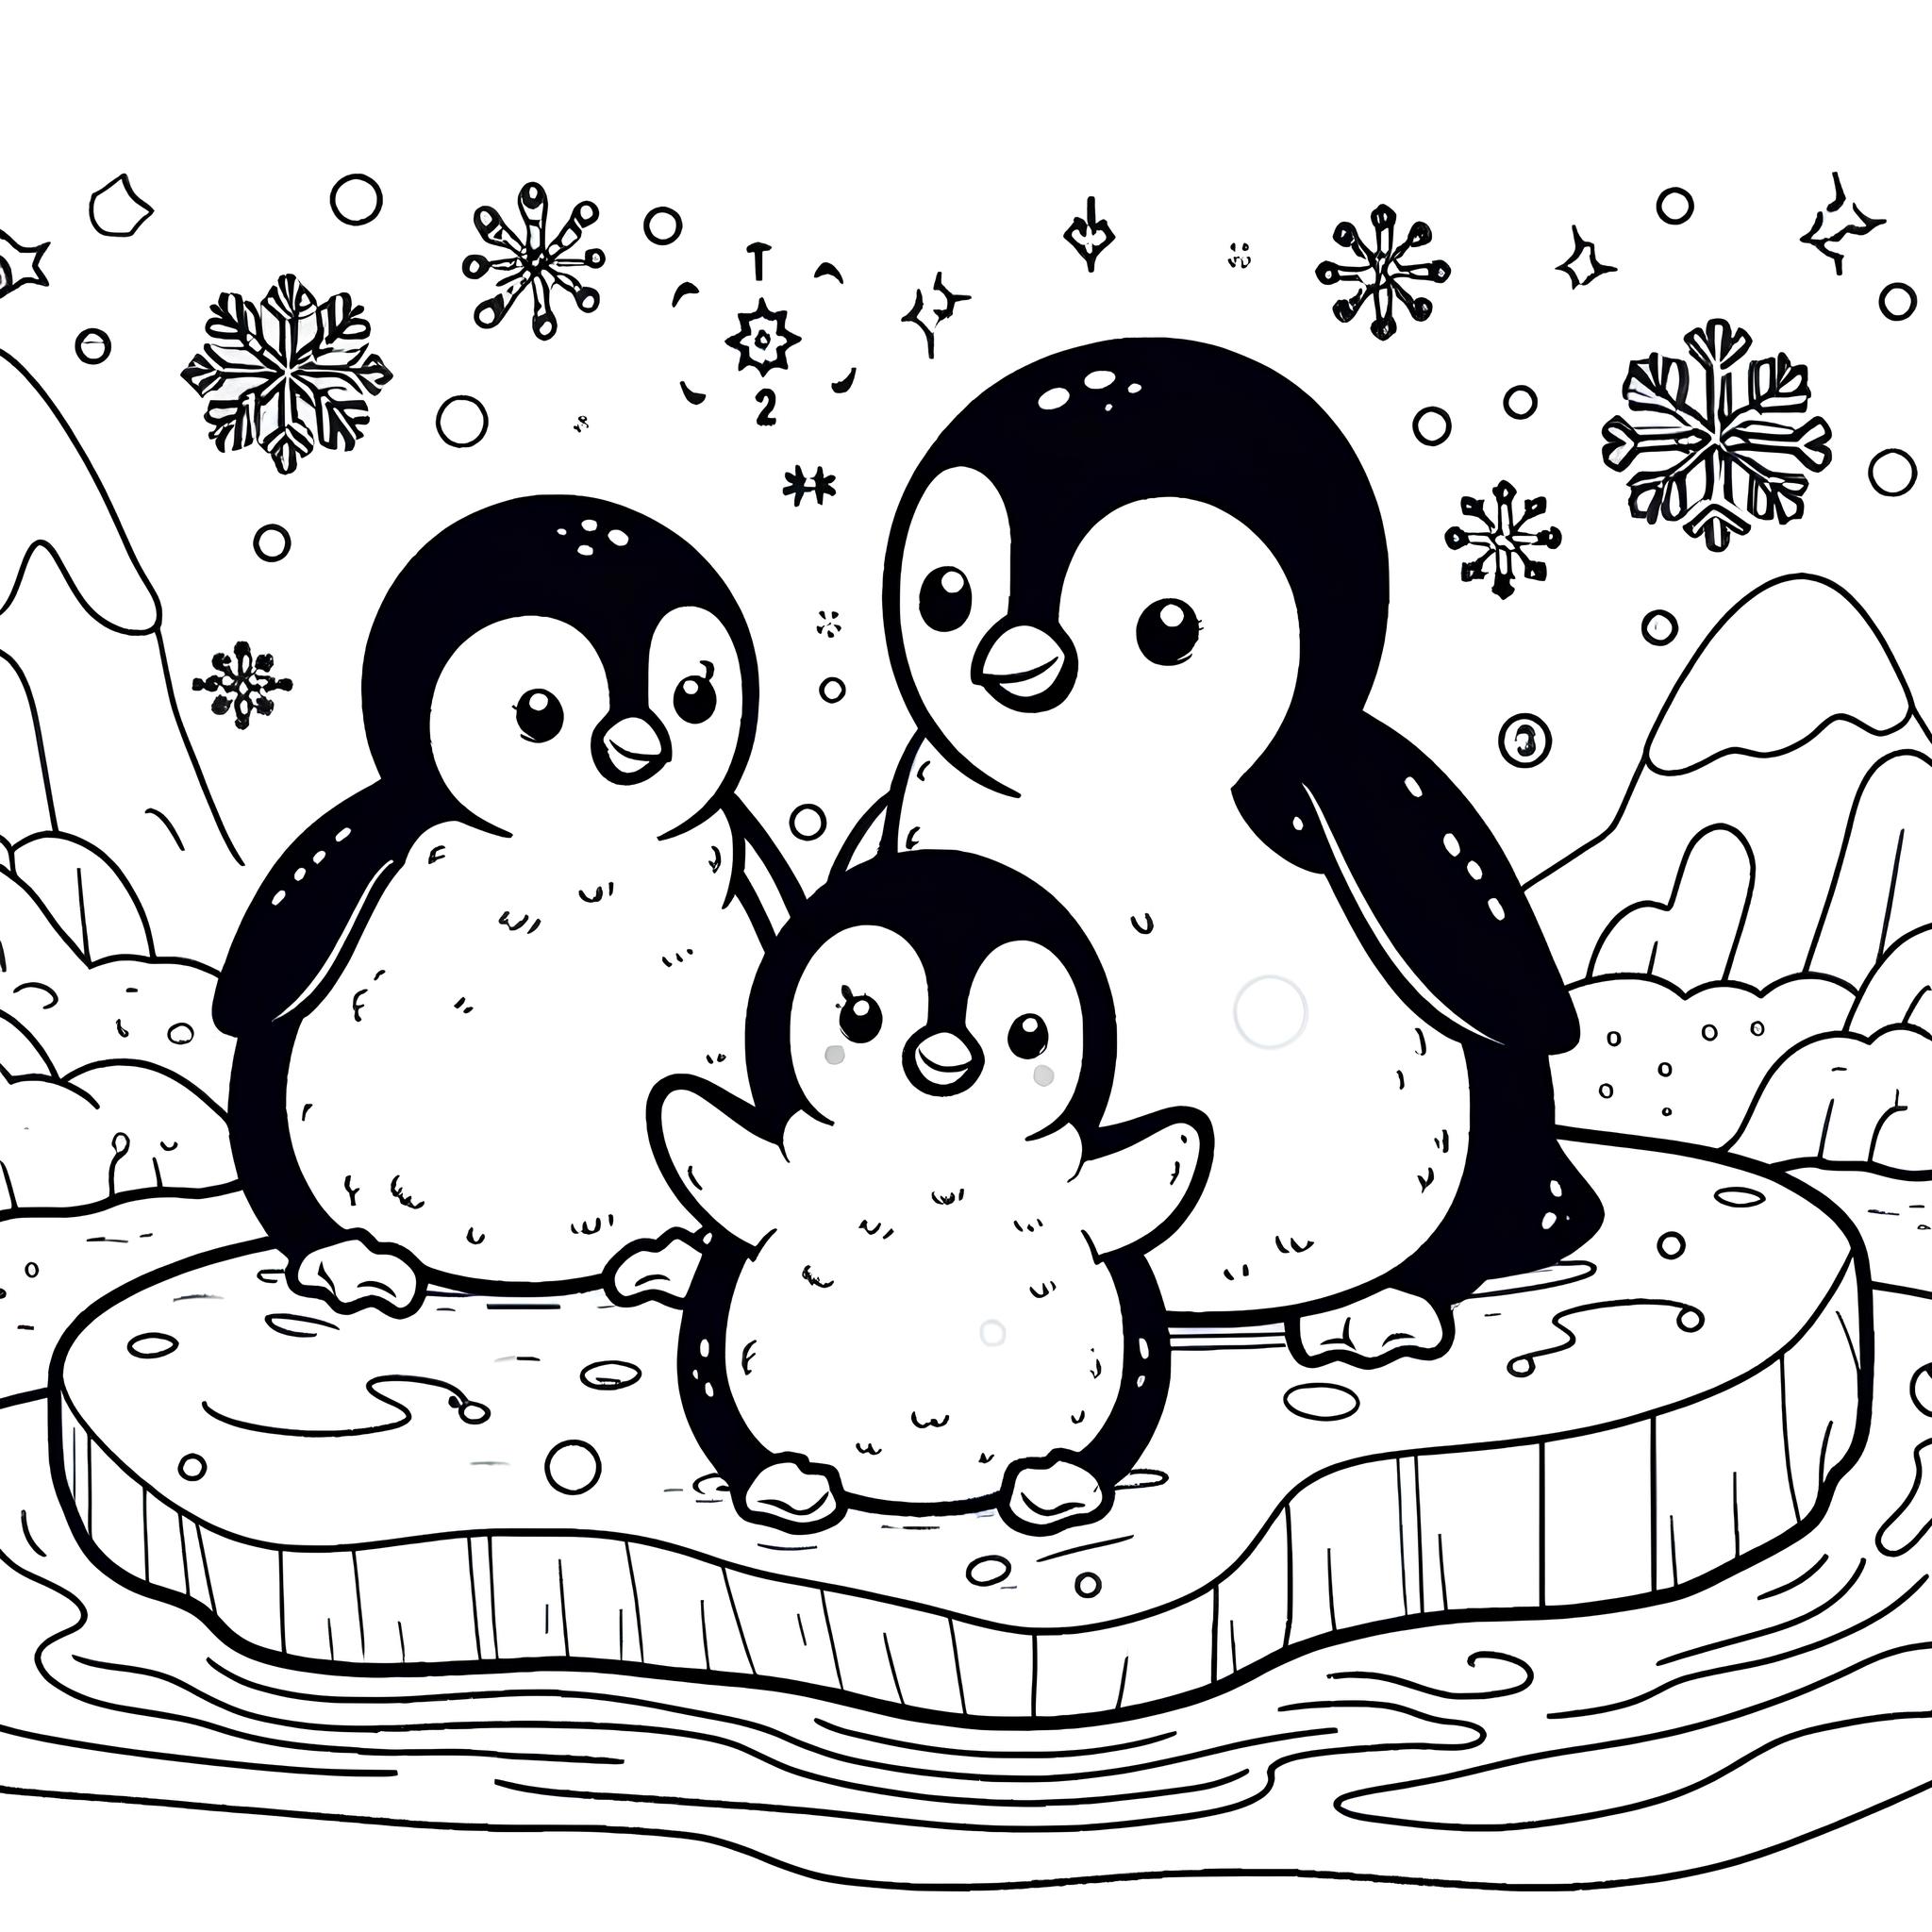 Ausmalbild: Pinguinfamilie